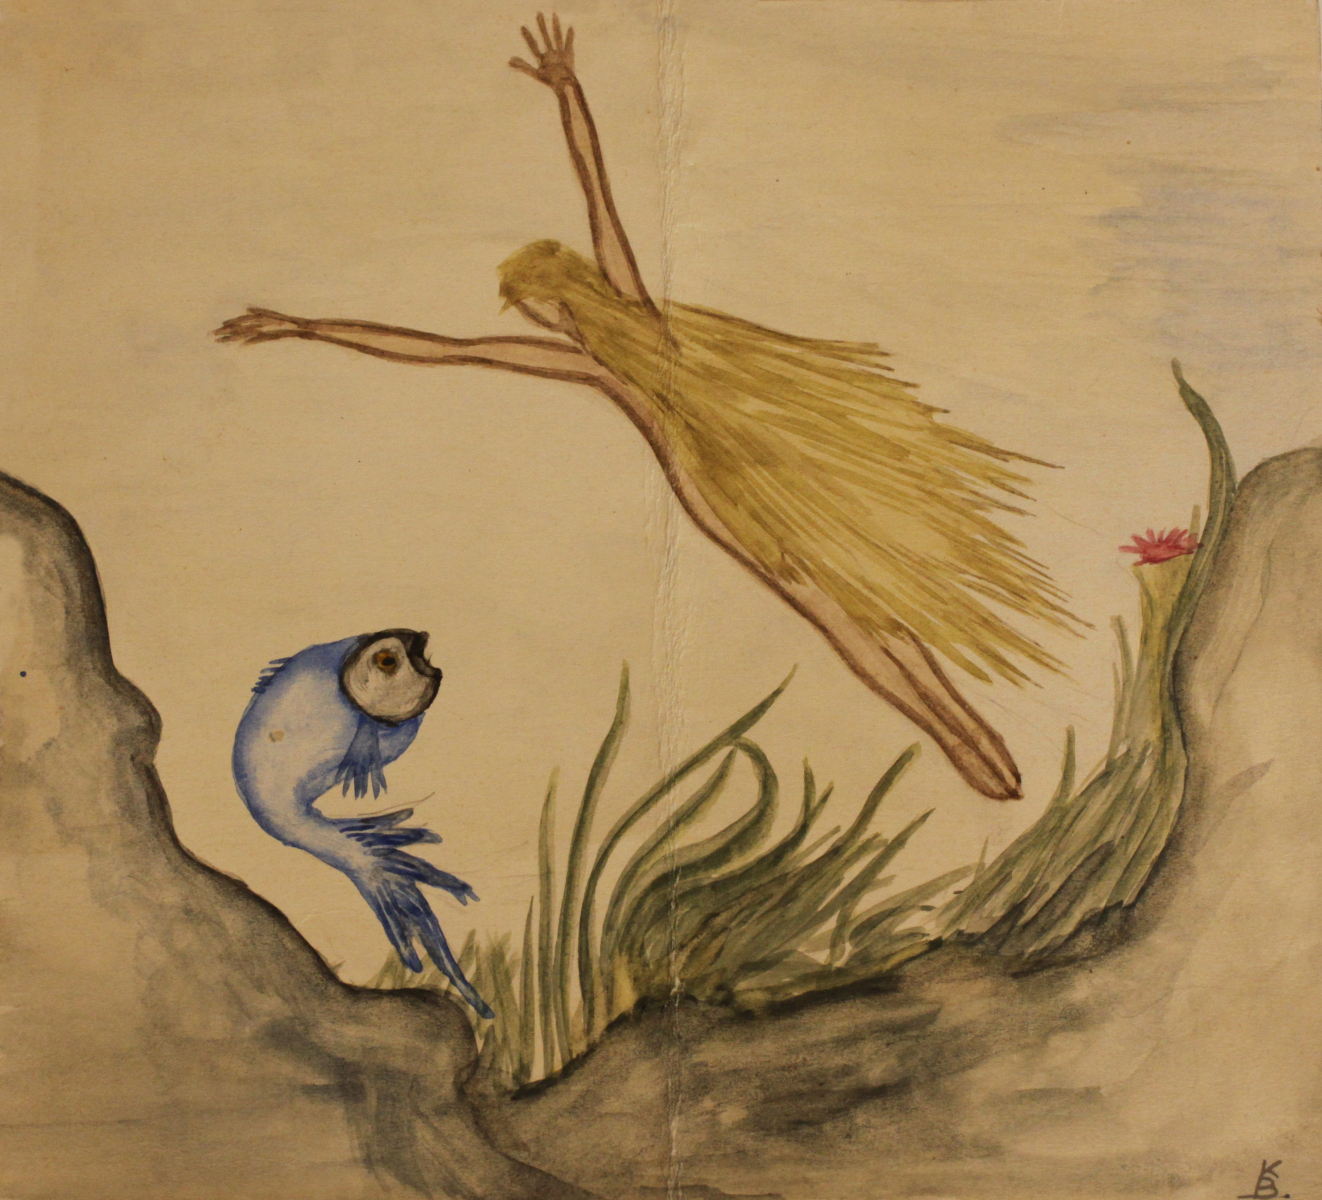 Na dnie morza niebieska ryba i dziewczyna z rozpostartymi rękami i włosami sięgającymi stóp